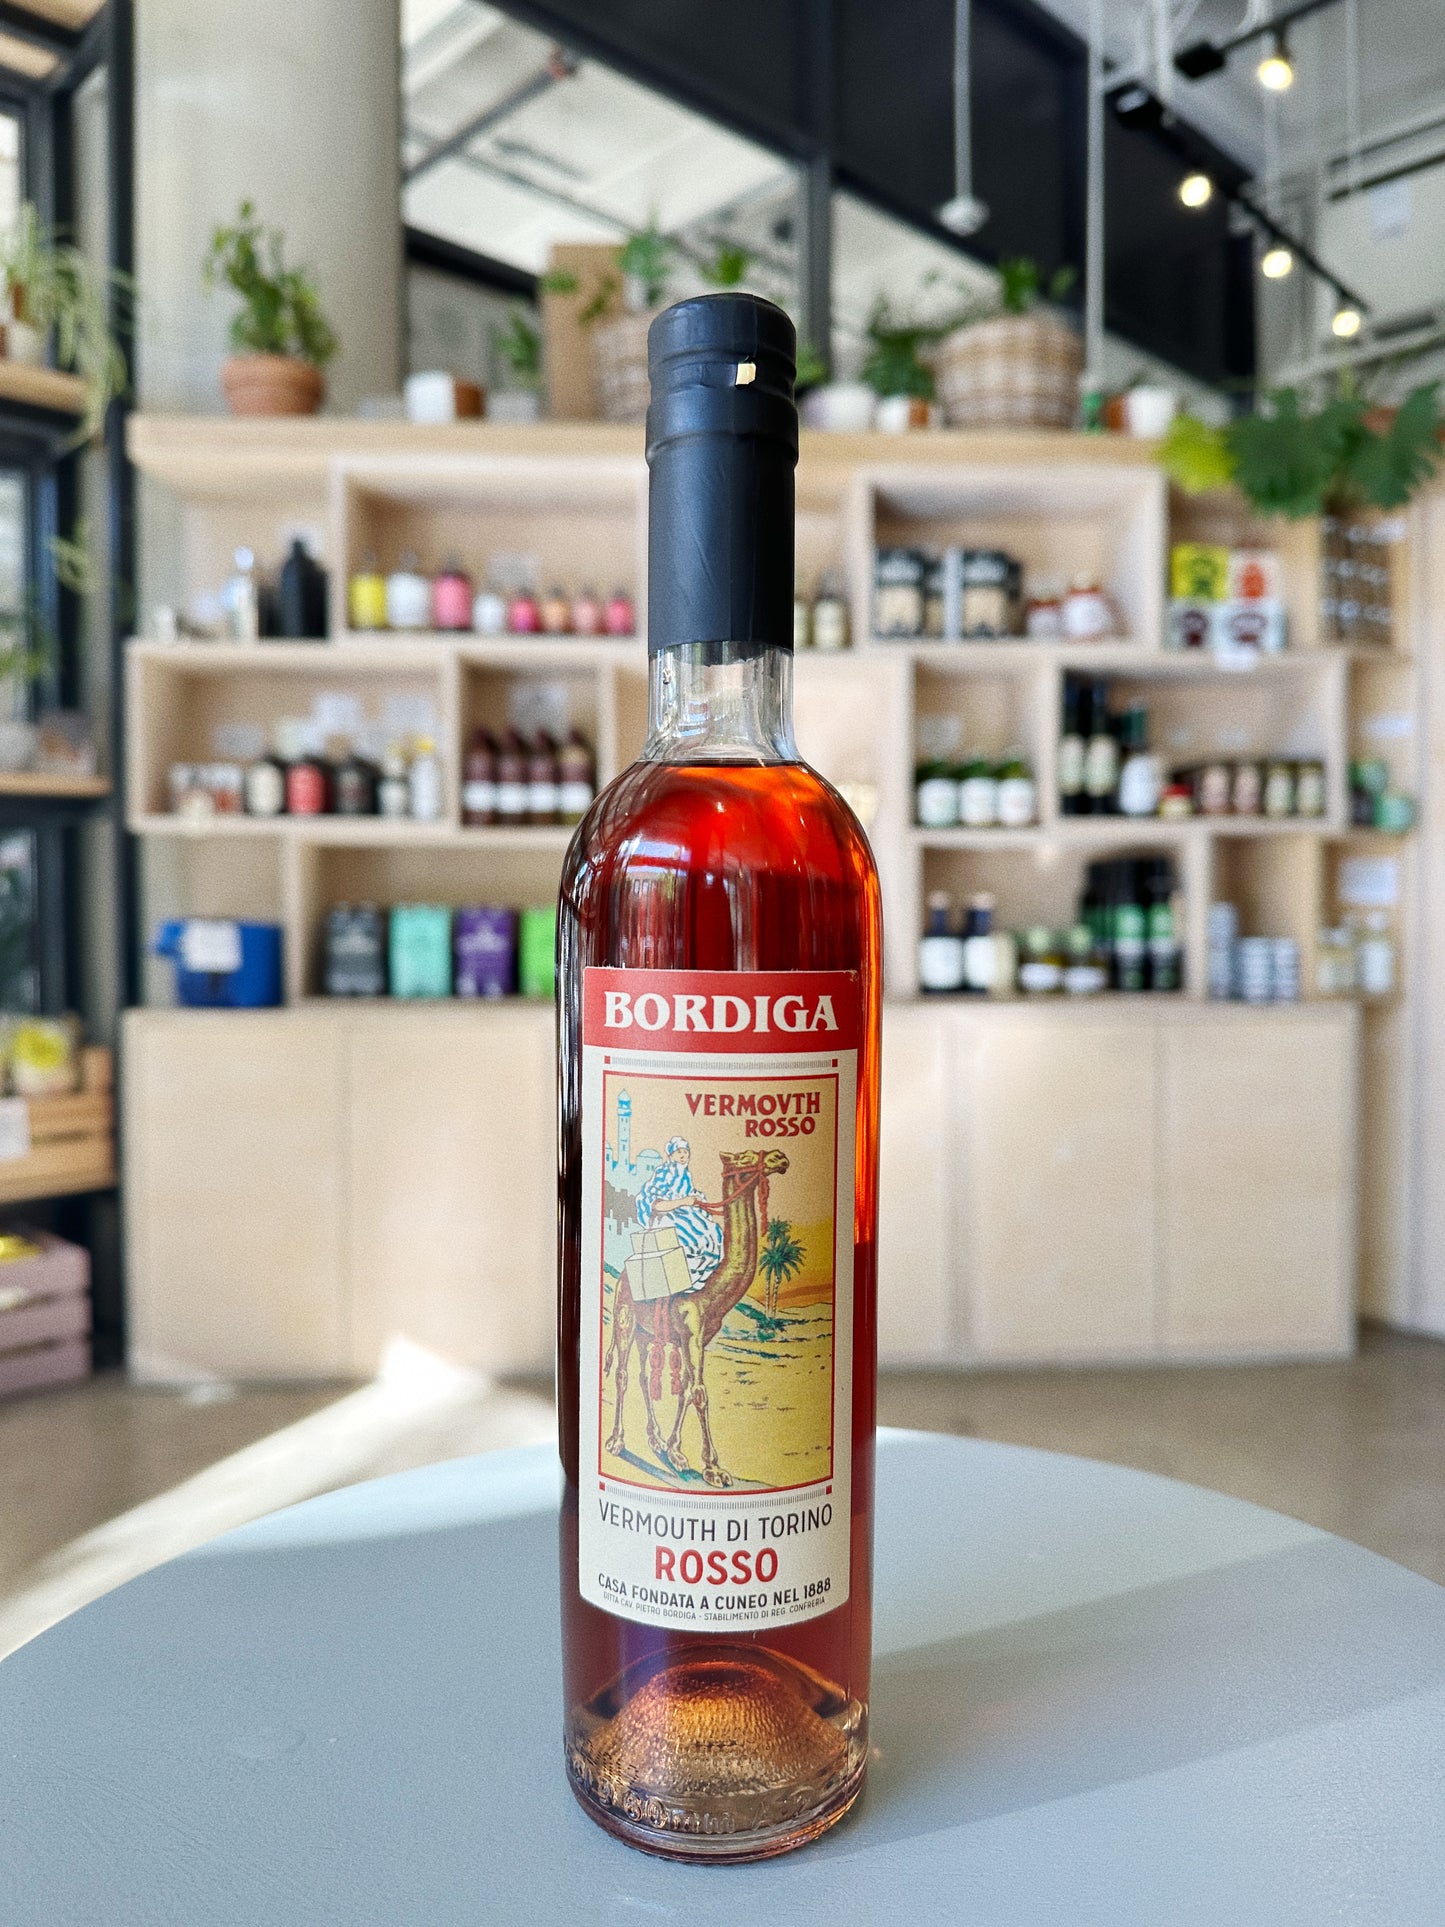 Bordiga Vermouth di Torino Rosso 375mL